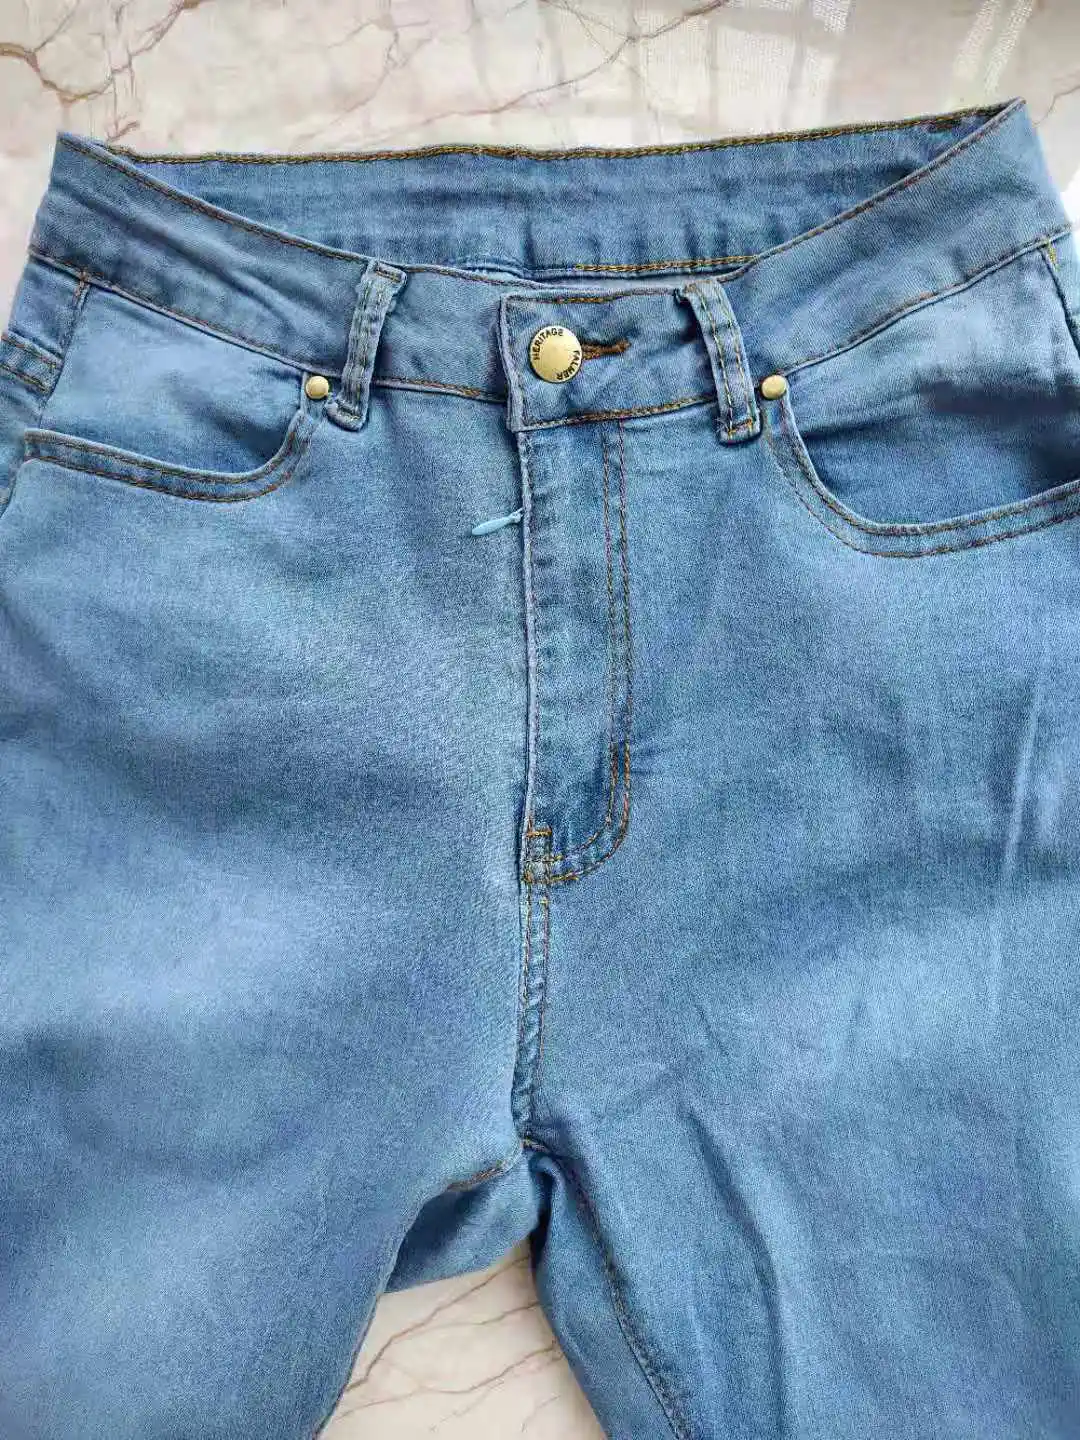 Outdoor Sex Open Crotch Pants for Women Hidden Zipper Trousers Women's ...